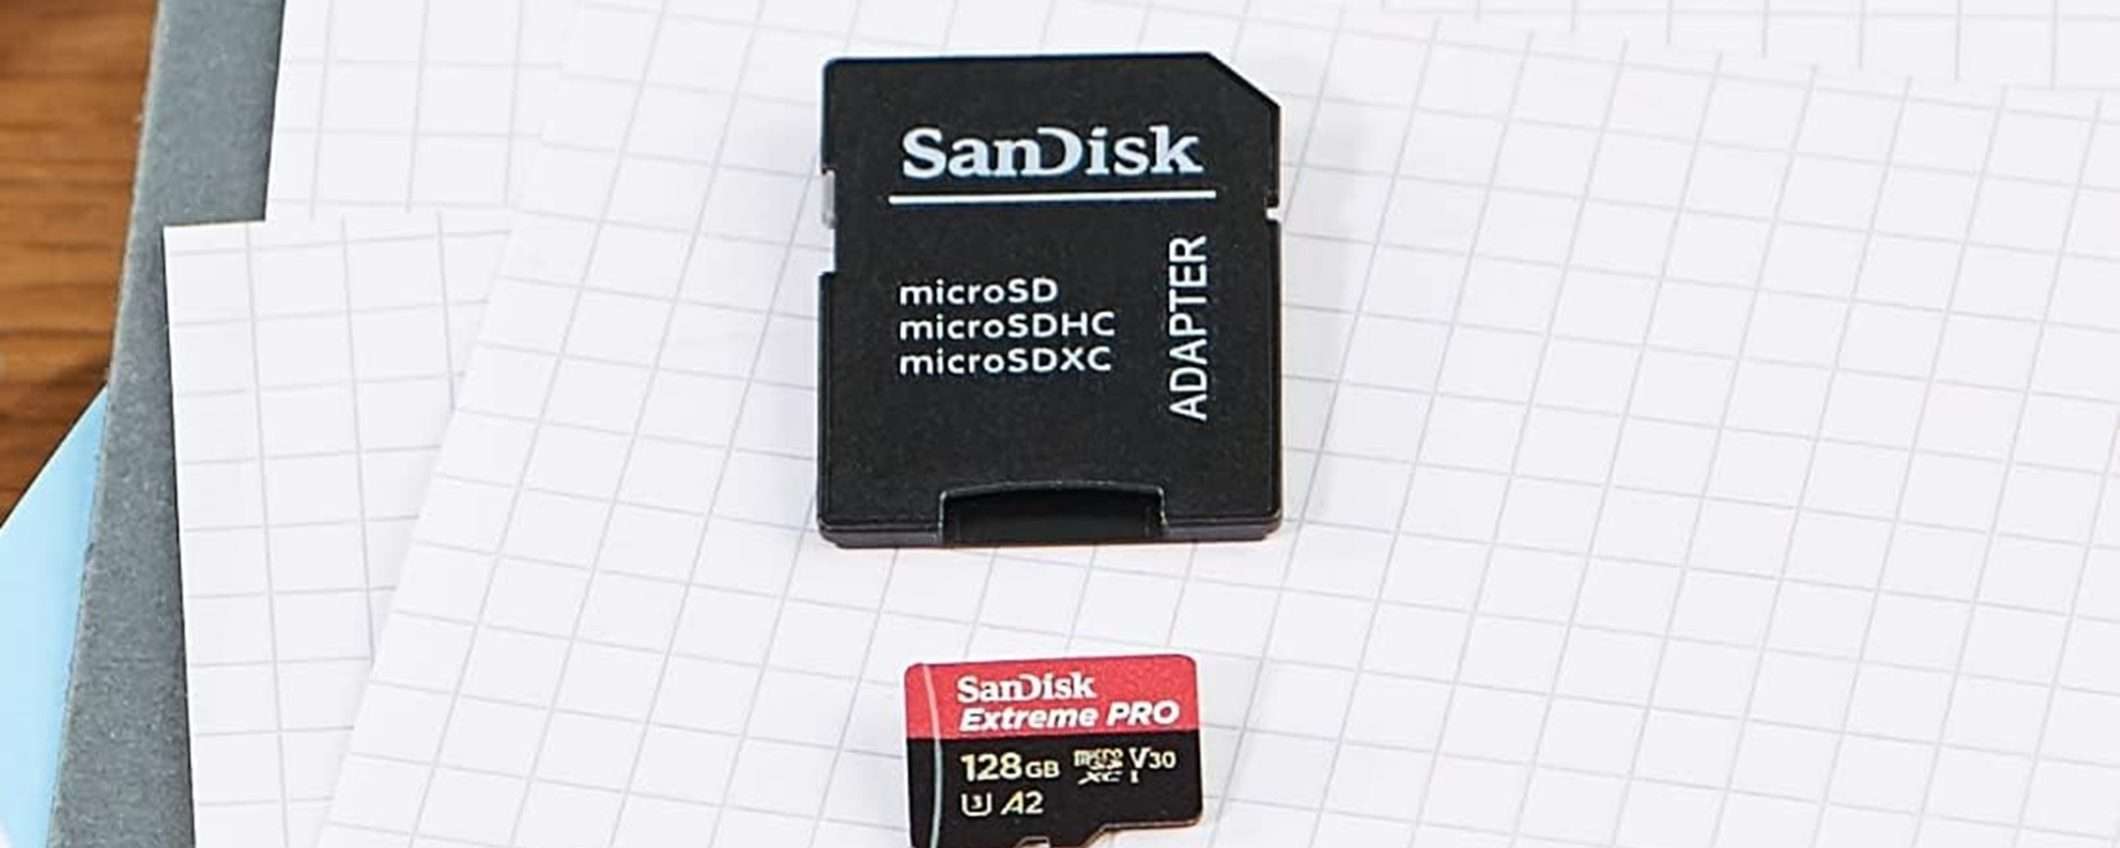 MicroSDXC SanDisk Extreme Pro da 128GB + adattatore SD e Rescue Pro Deluxe a soli 26€